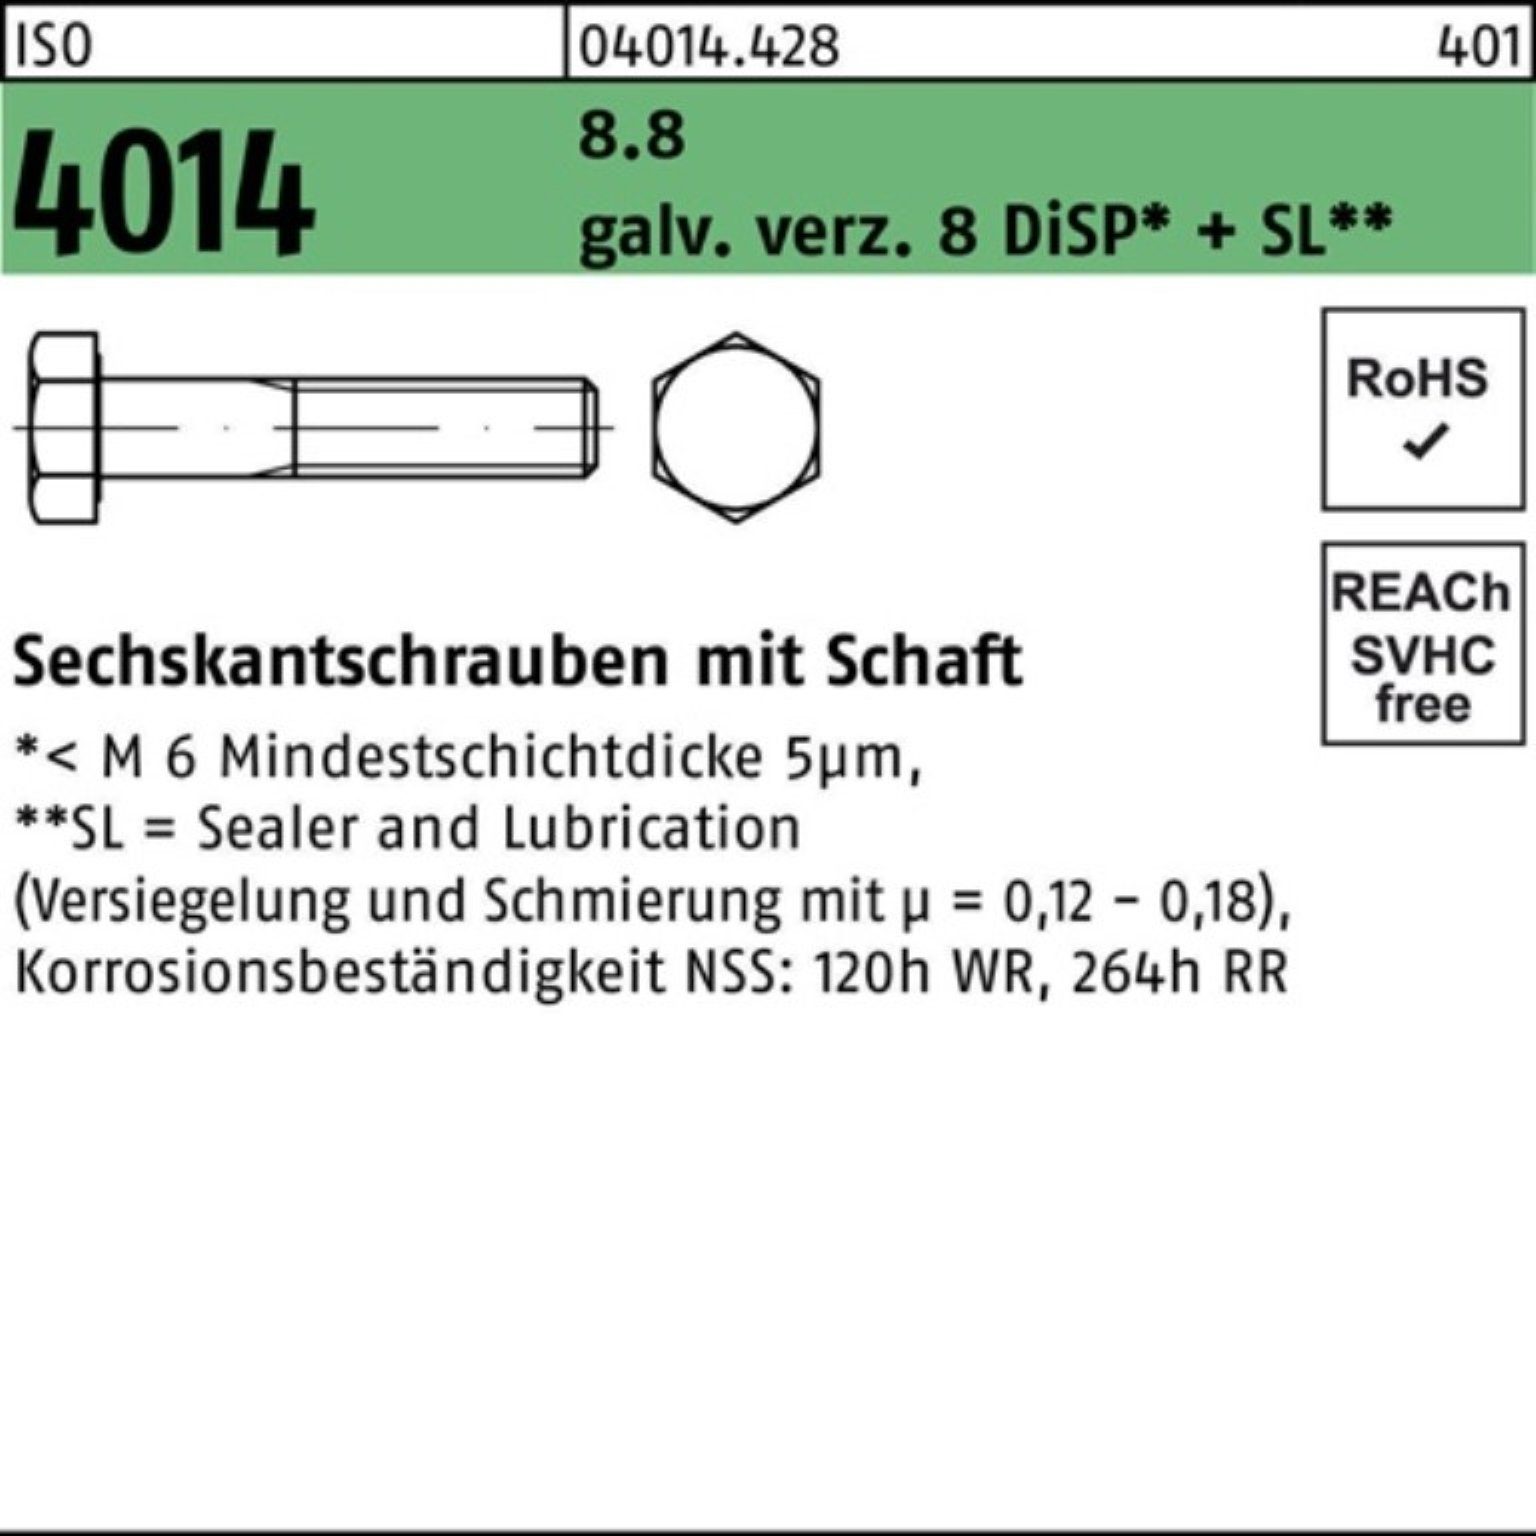 ISO Sechskantschraube M8x85 Schaft 4014 Sechskantschraube 8 galv.verz. Bufab 100er Di Pack 8.8